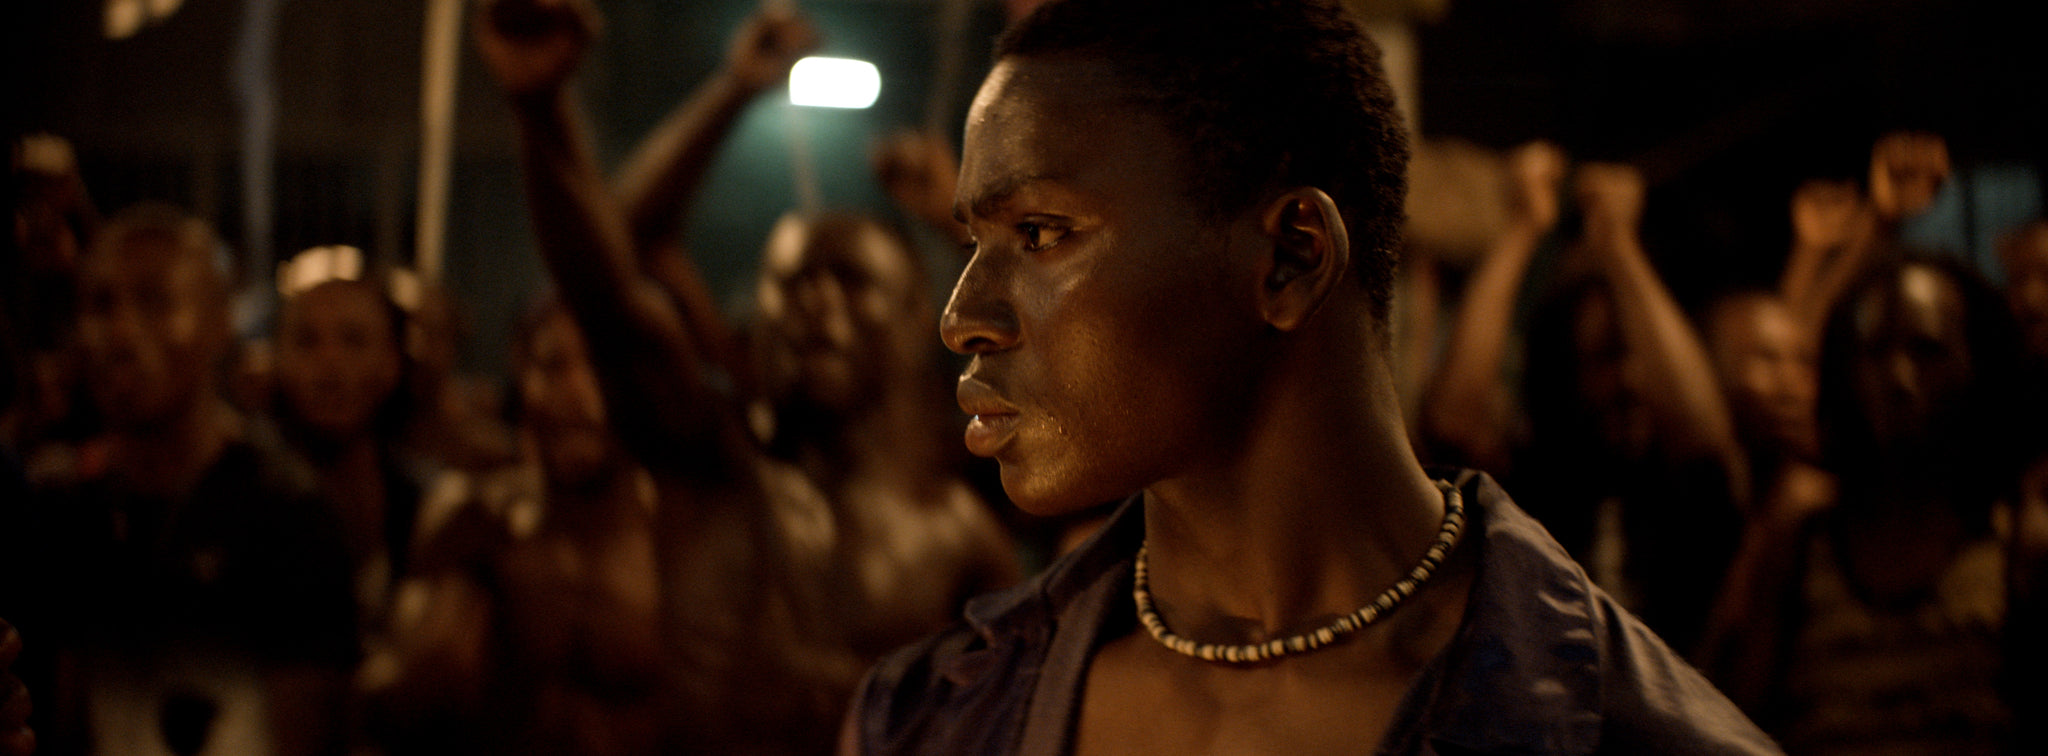 La nuit des rois 2021 film africain philippe Lacote cote d'ivoire cinewax